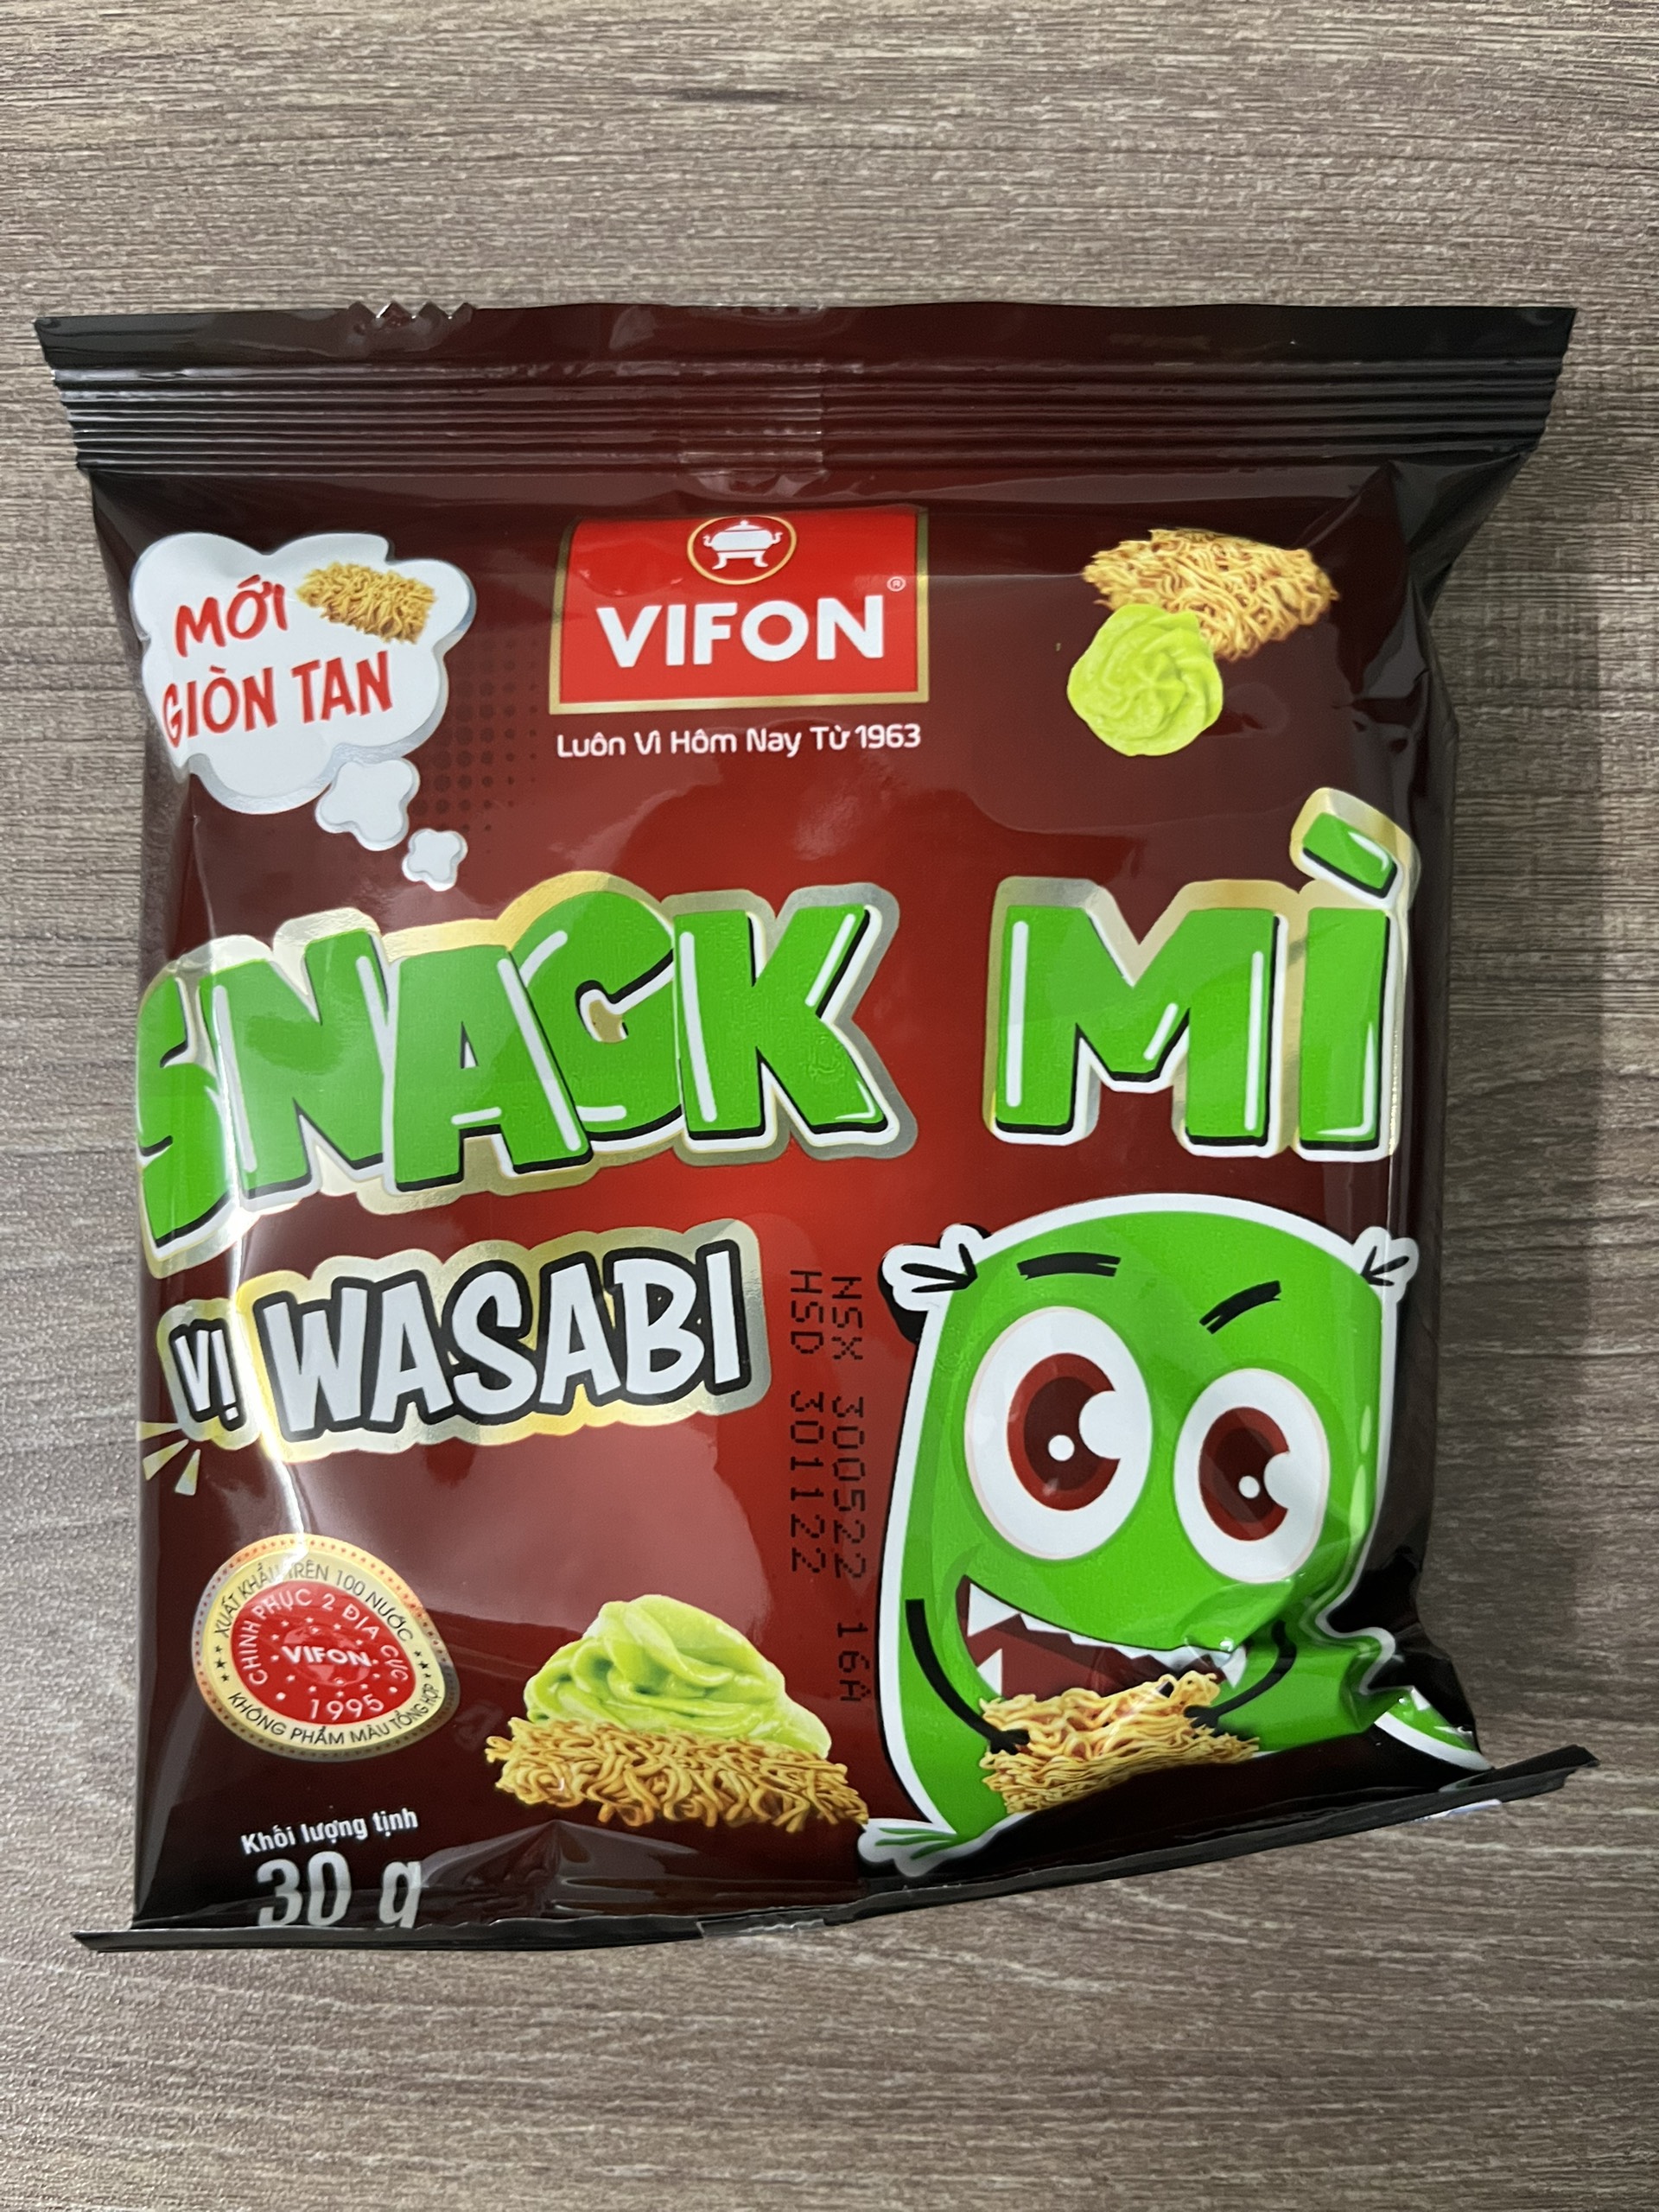 Snack mì tôm vị wasabi Vifon 30g